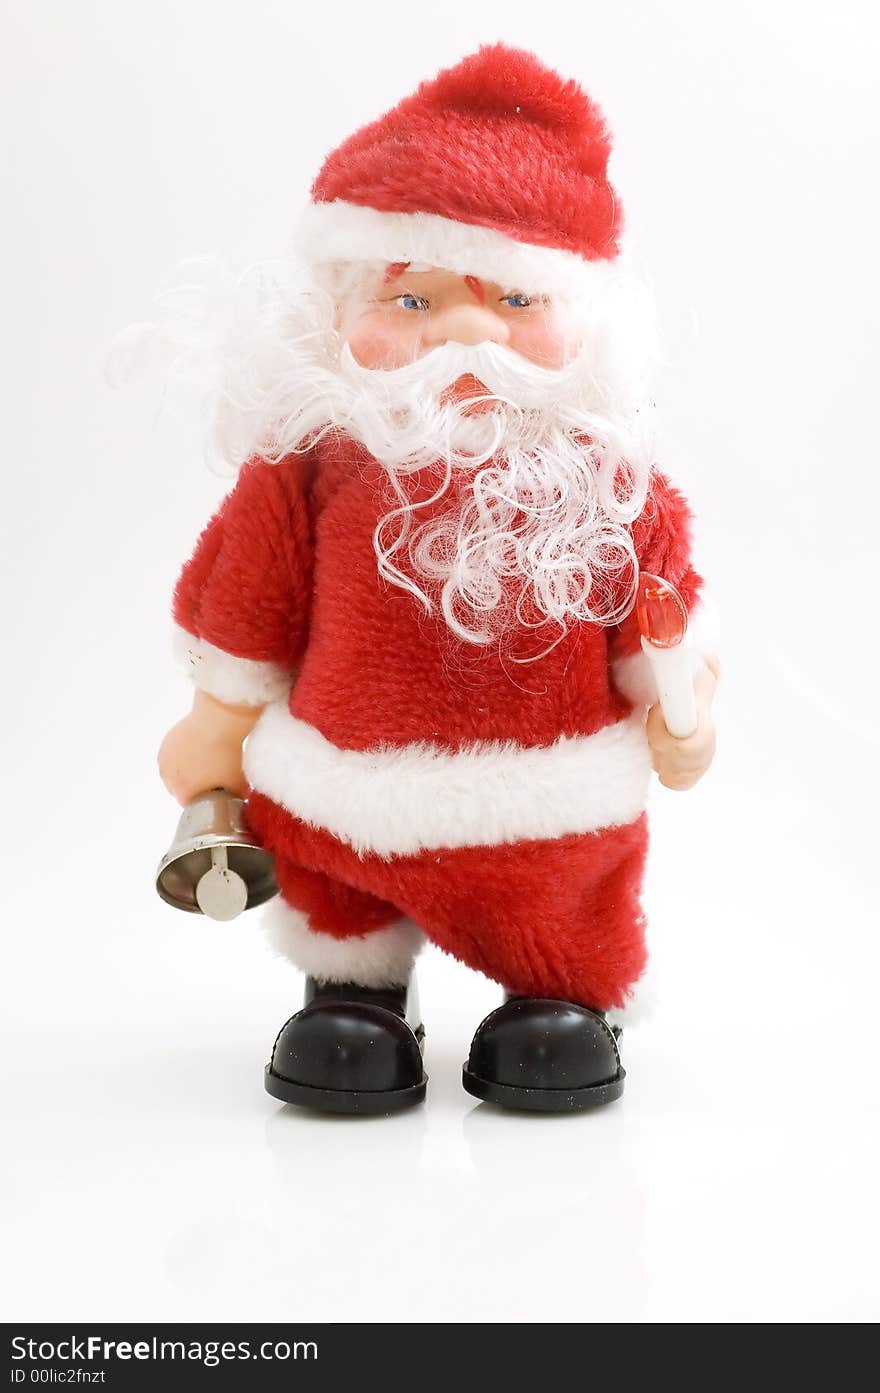 Santa claus toy on white background.